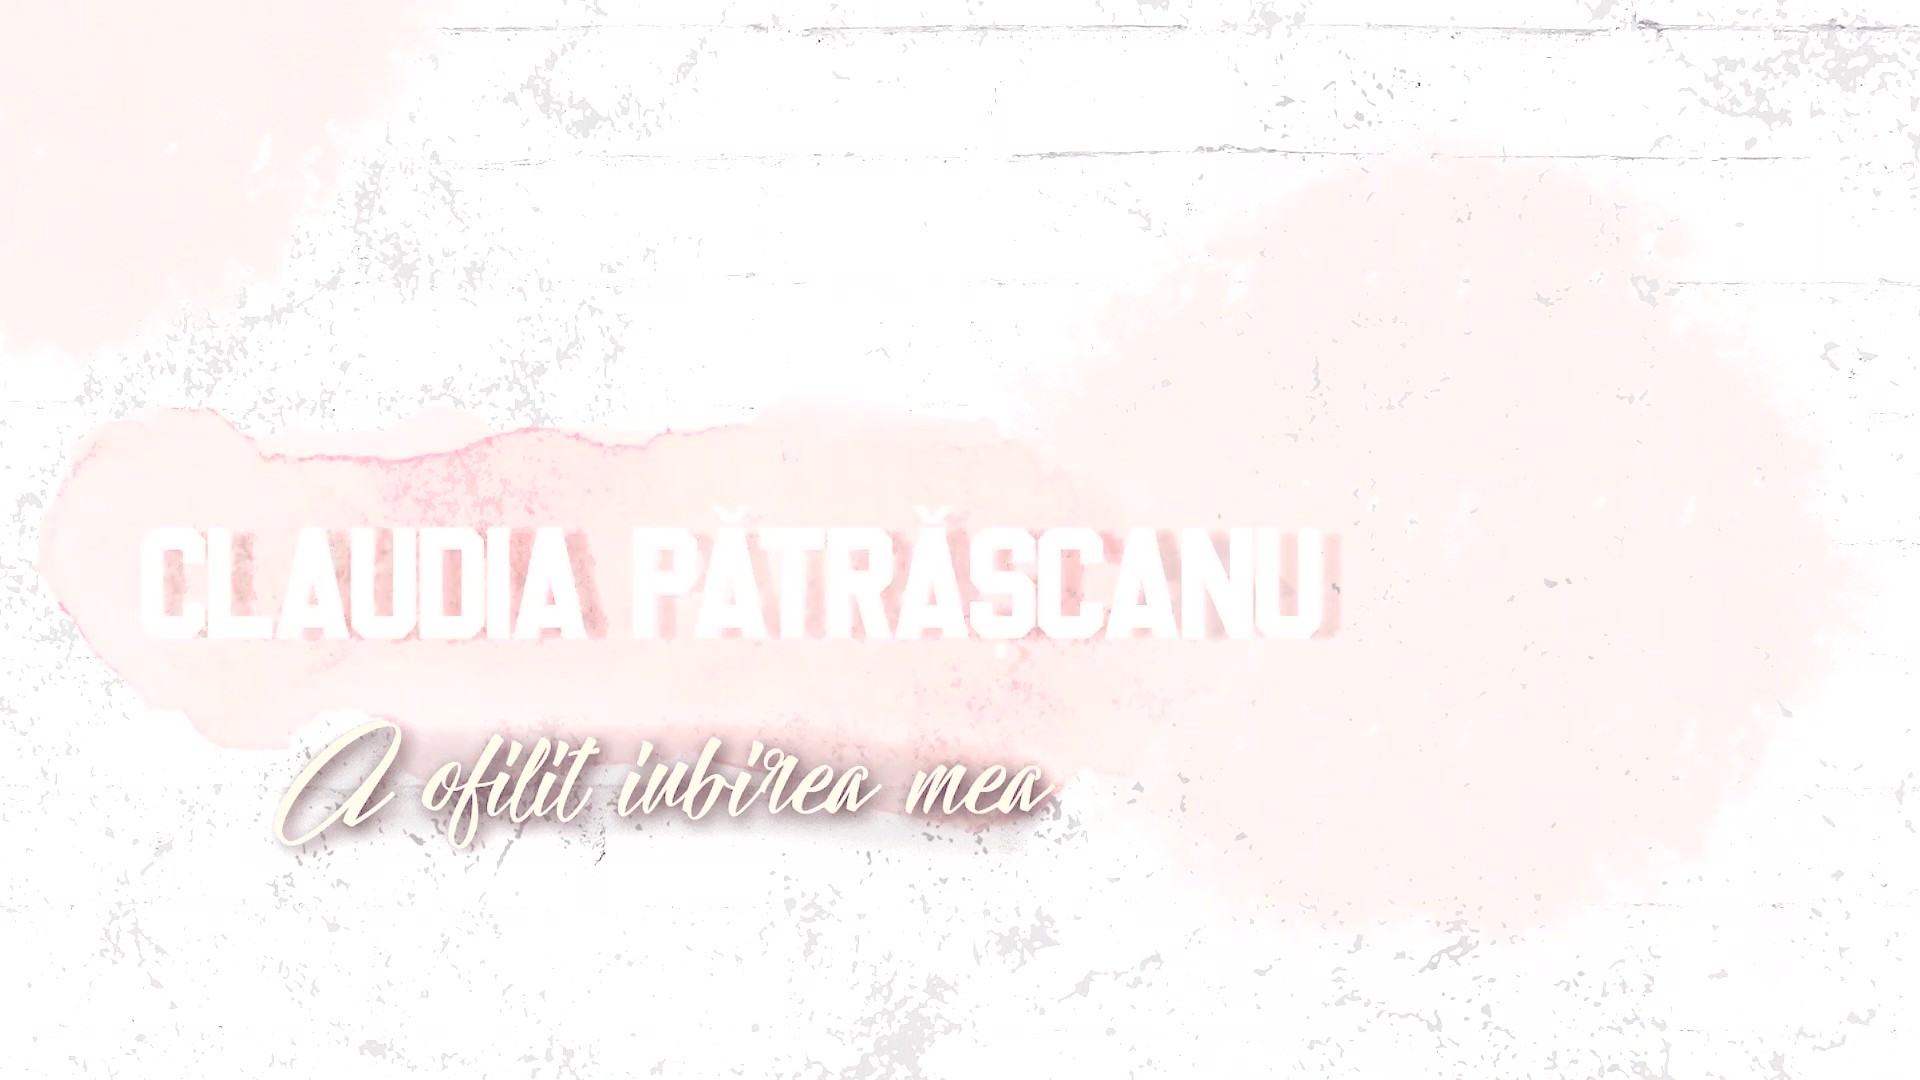 Claudia Patrascanu – A ofilit iubirea mea - Versuri